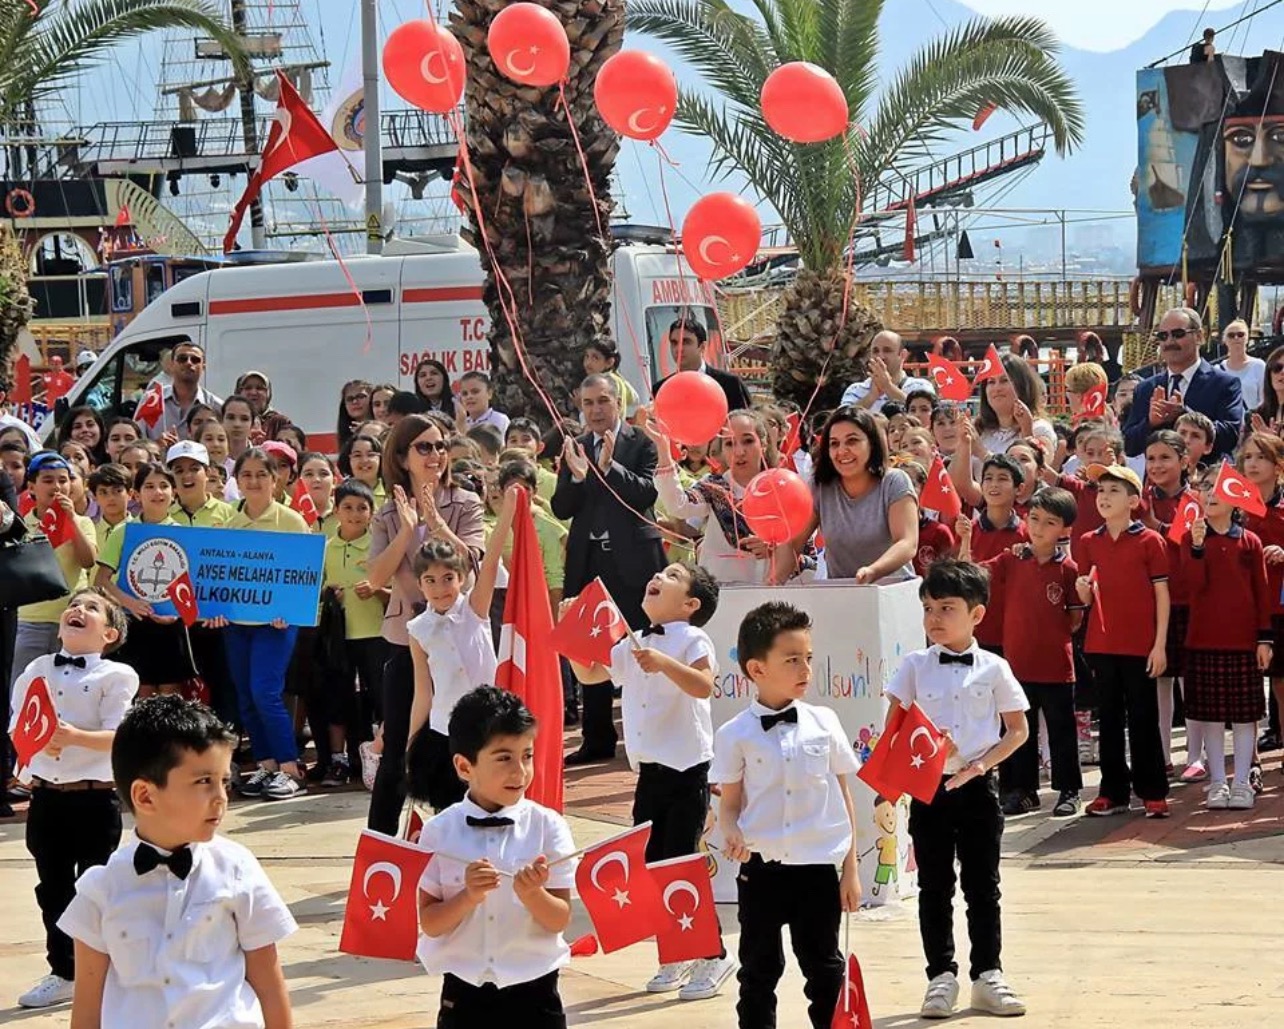 23 апреля в турции какой праздник. 23 Апреля праздник в Турции. 23 Nisan праздник в Турции. День национальной независимости и детей Турции. День детей в Турции.